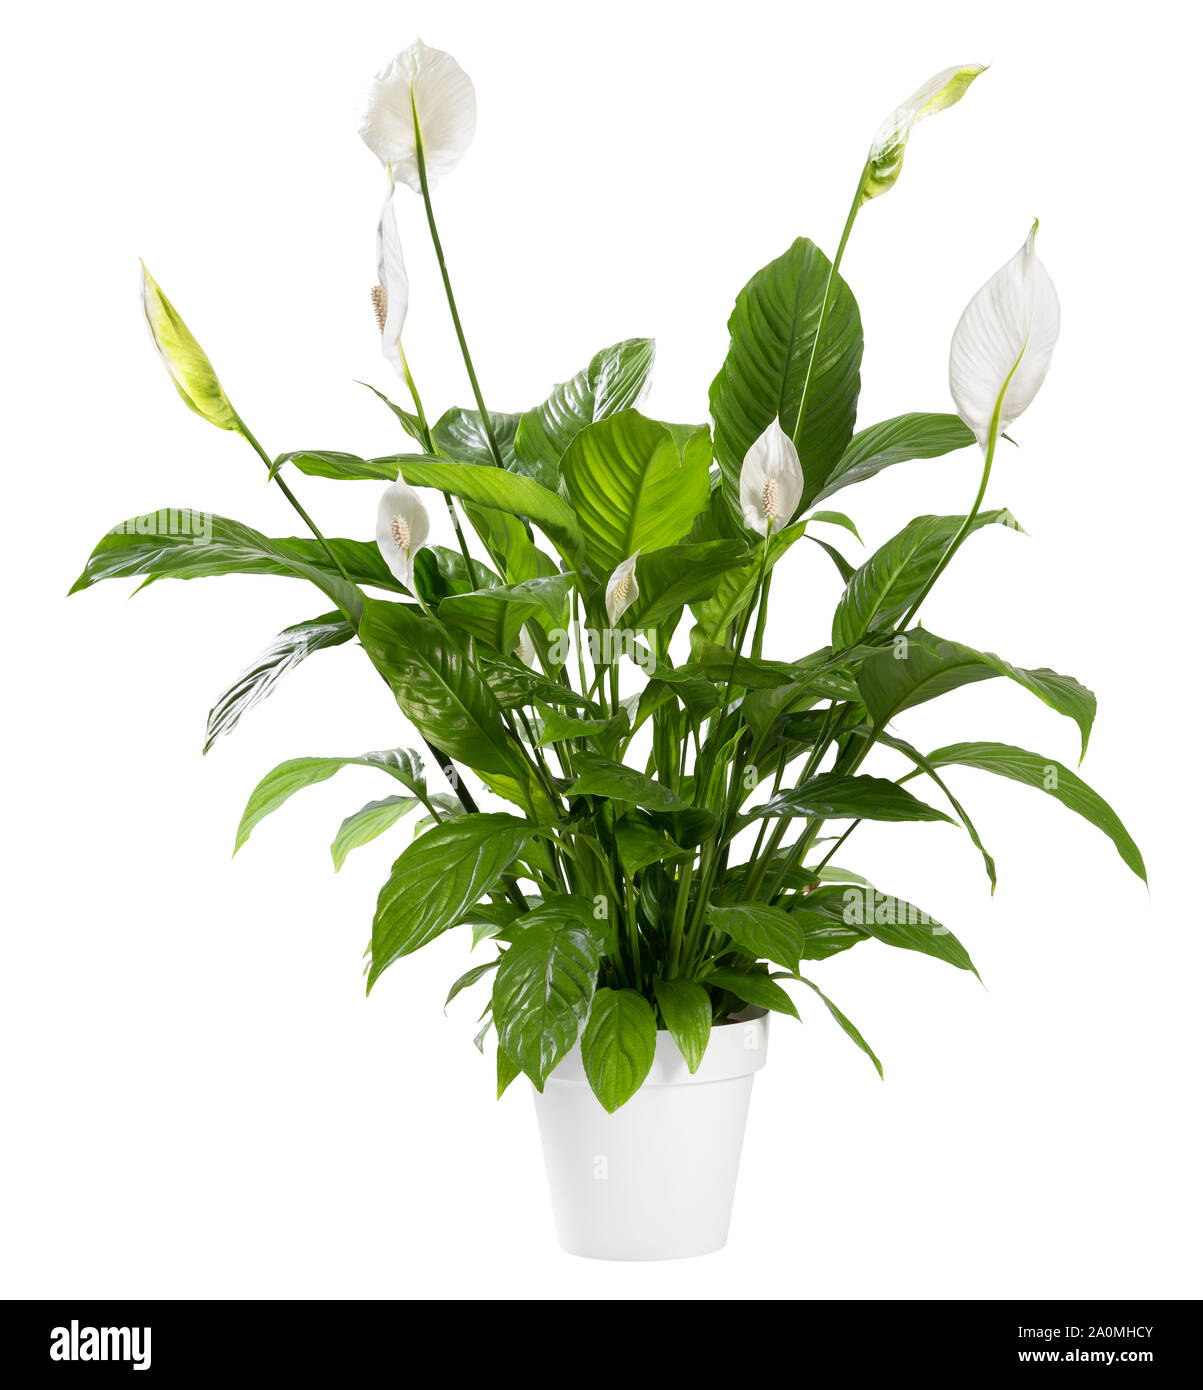 Topfpflanzen Spathiphyllum Pflanze mit zarten weißen Blüten mit ornamentalen spathes auch als Frieden lily bekannt isoliert auf weißem Hintergrund Stockfoto